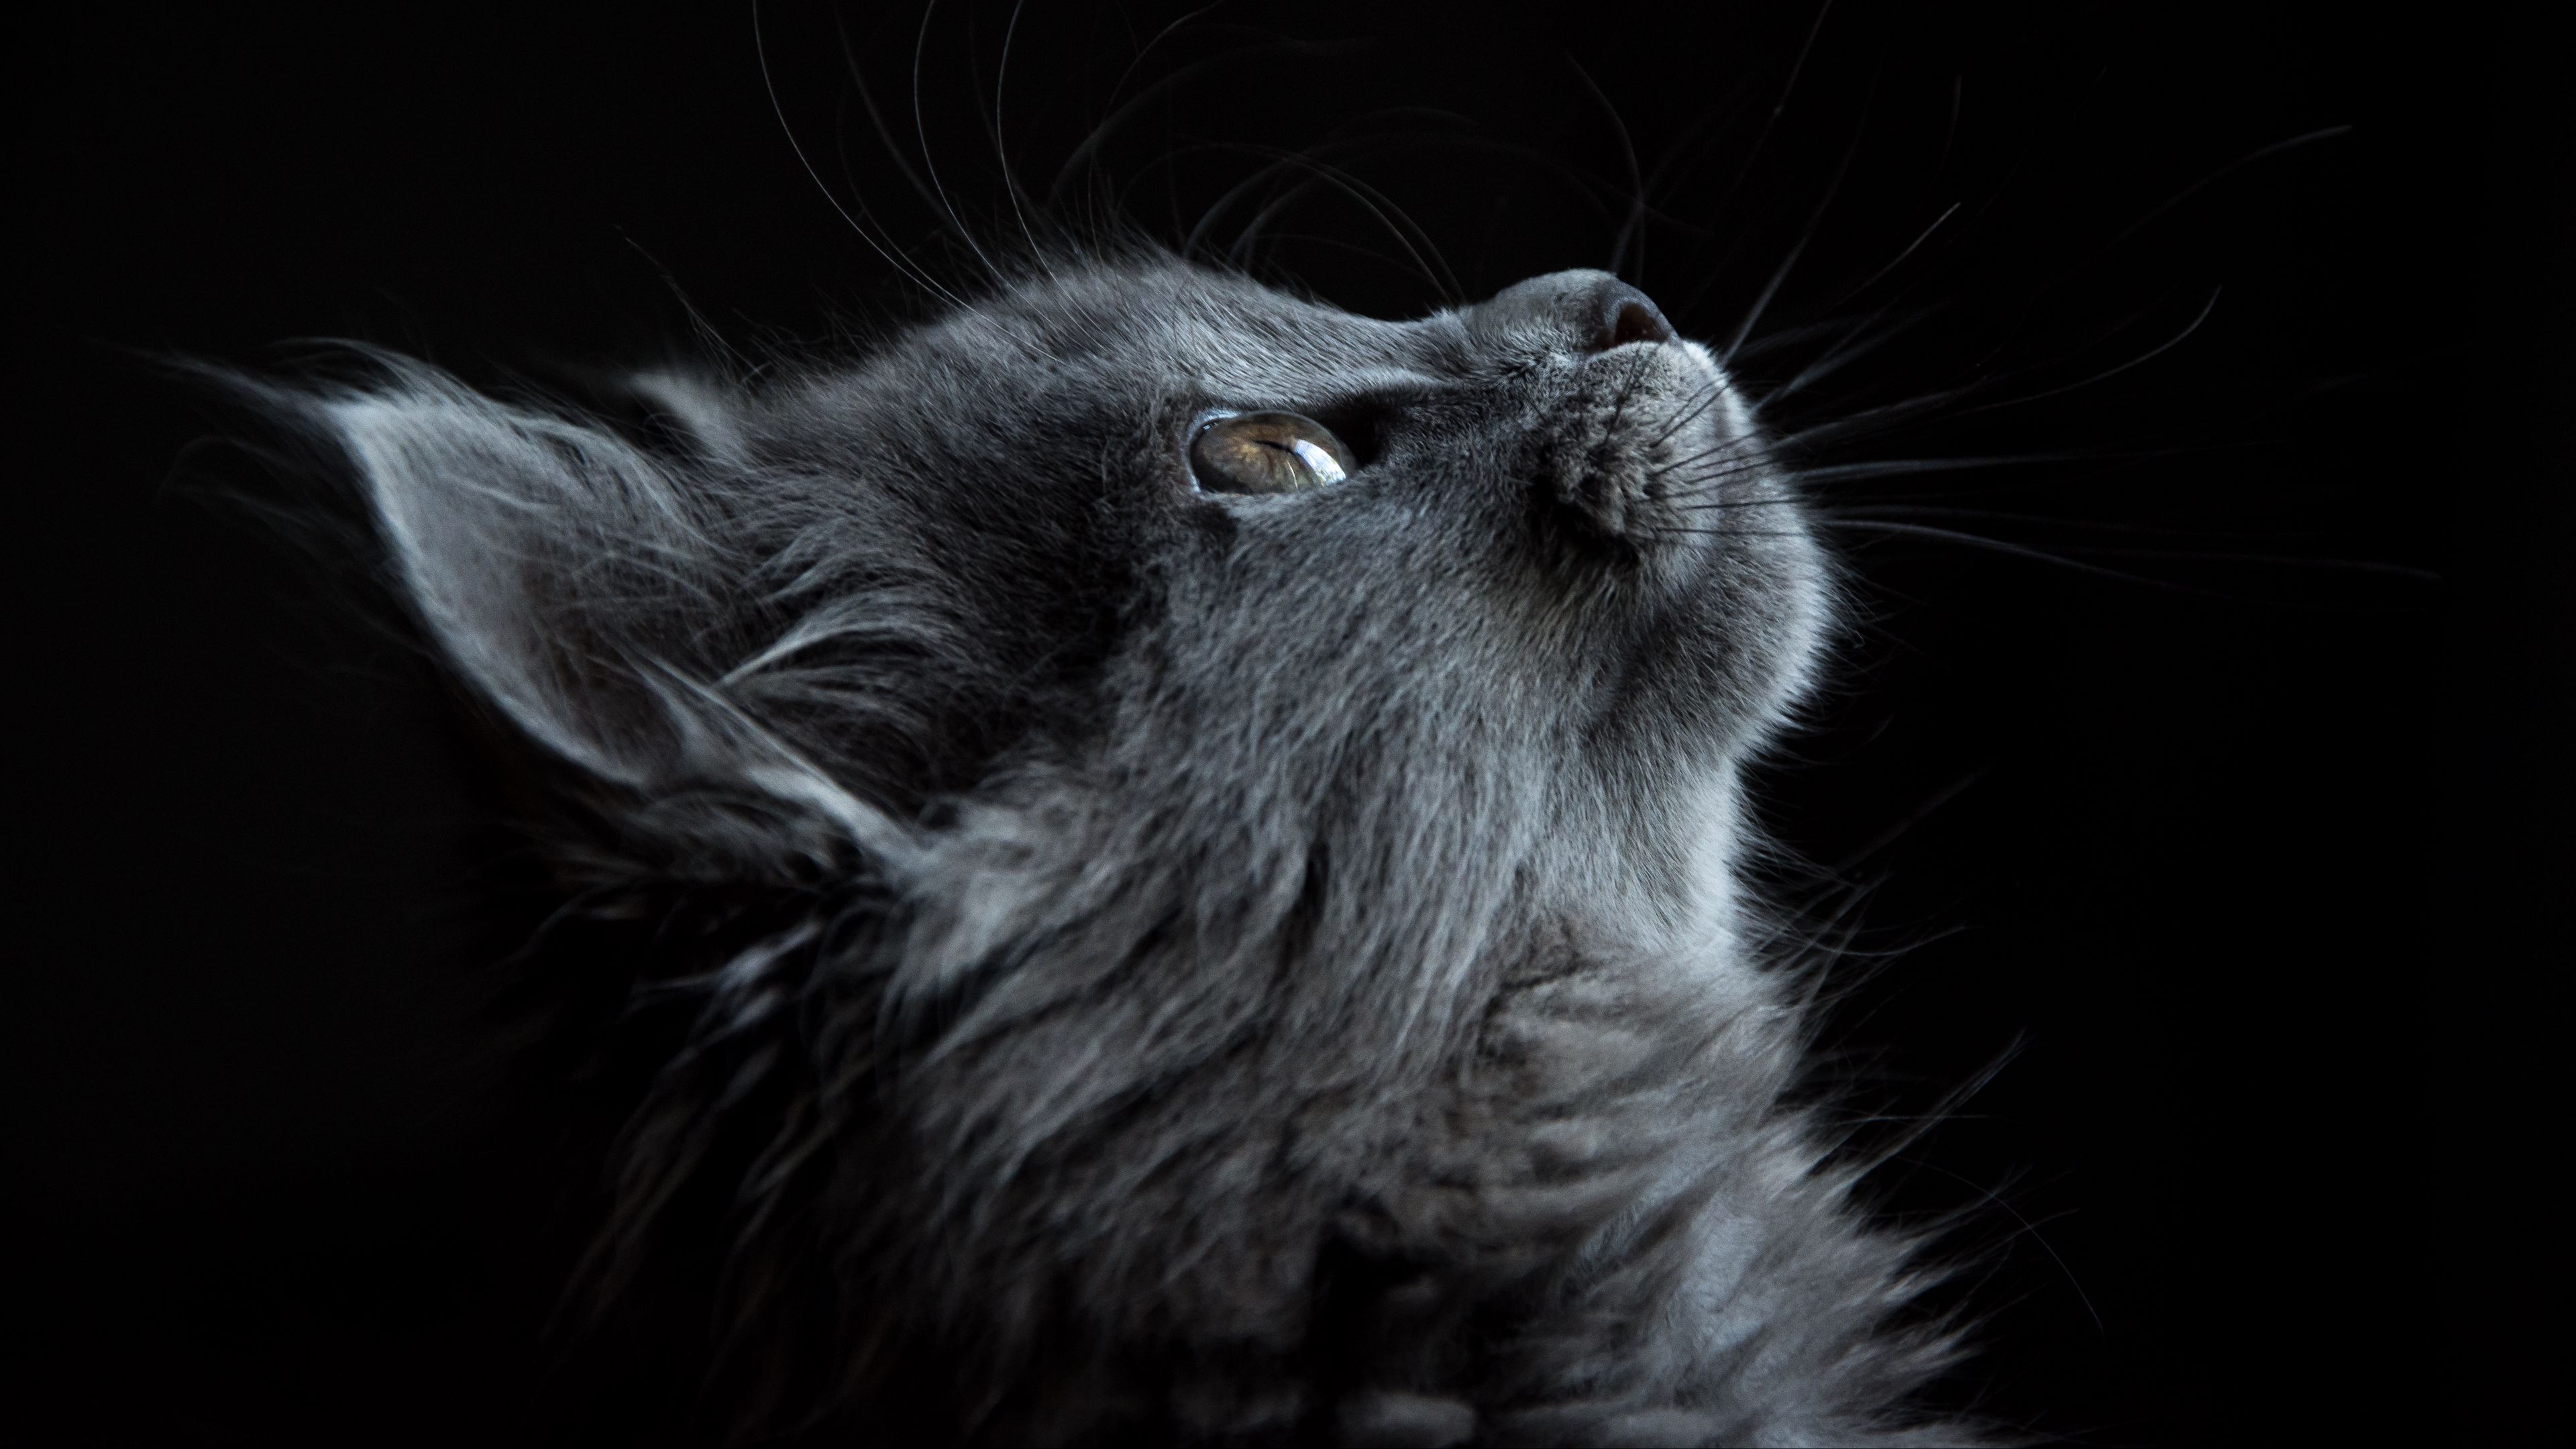 Hình nền mèo đen 3840x2160: Mèo luôn là một cách an toàn và đáng yêu để thư giãn sau một ngày làm việc mệt mỏi. Chúng tôi có bộ sưu tập hình nền mèo đen 3840x2160 với những hình ảnh đáng yêu và kỳ quặc để giúp bạn thư giãn và cảm thấy tràn đầy năng lượng.